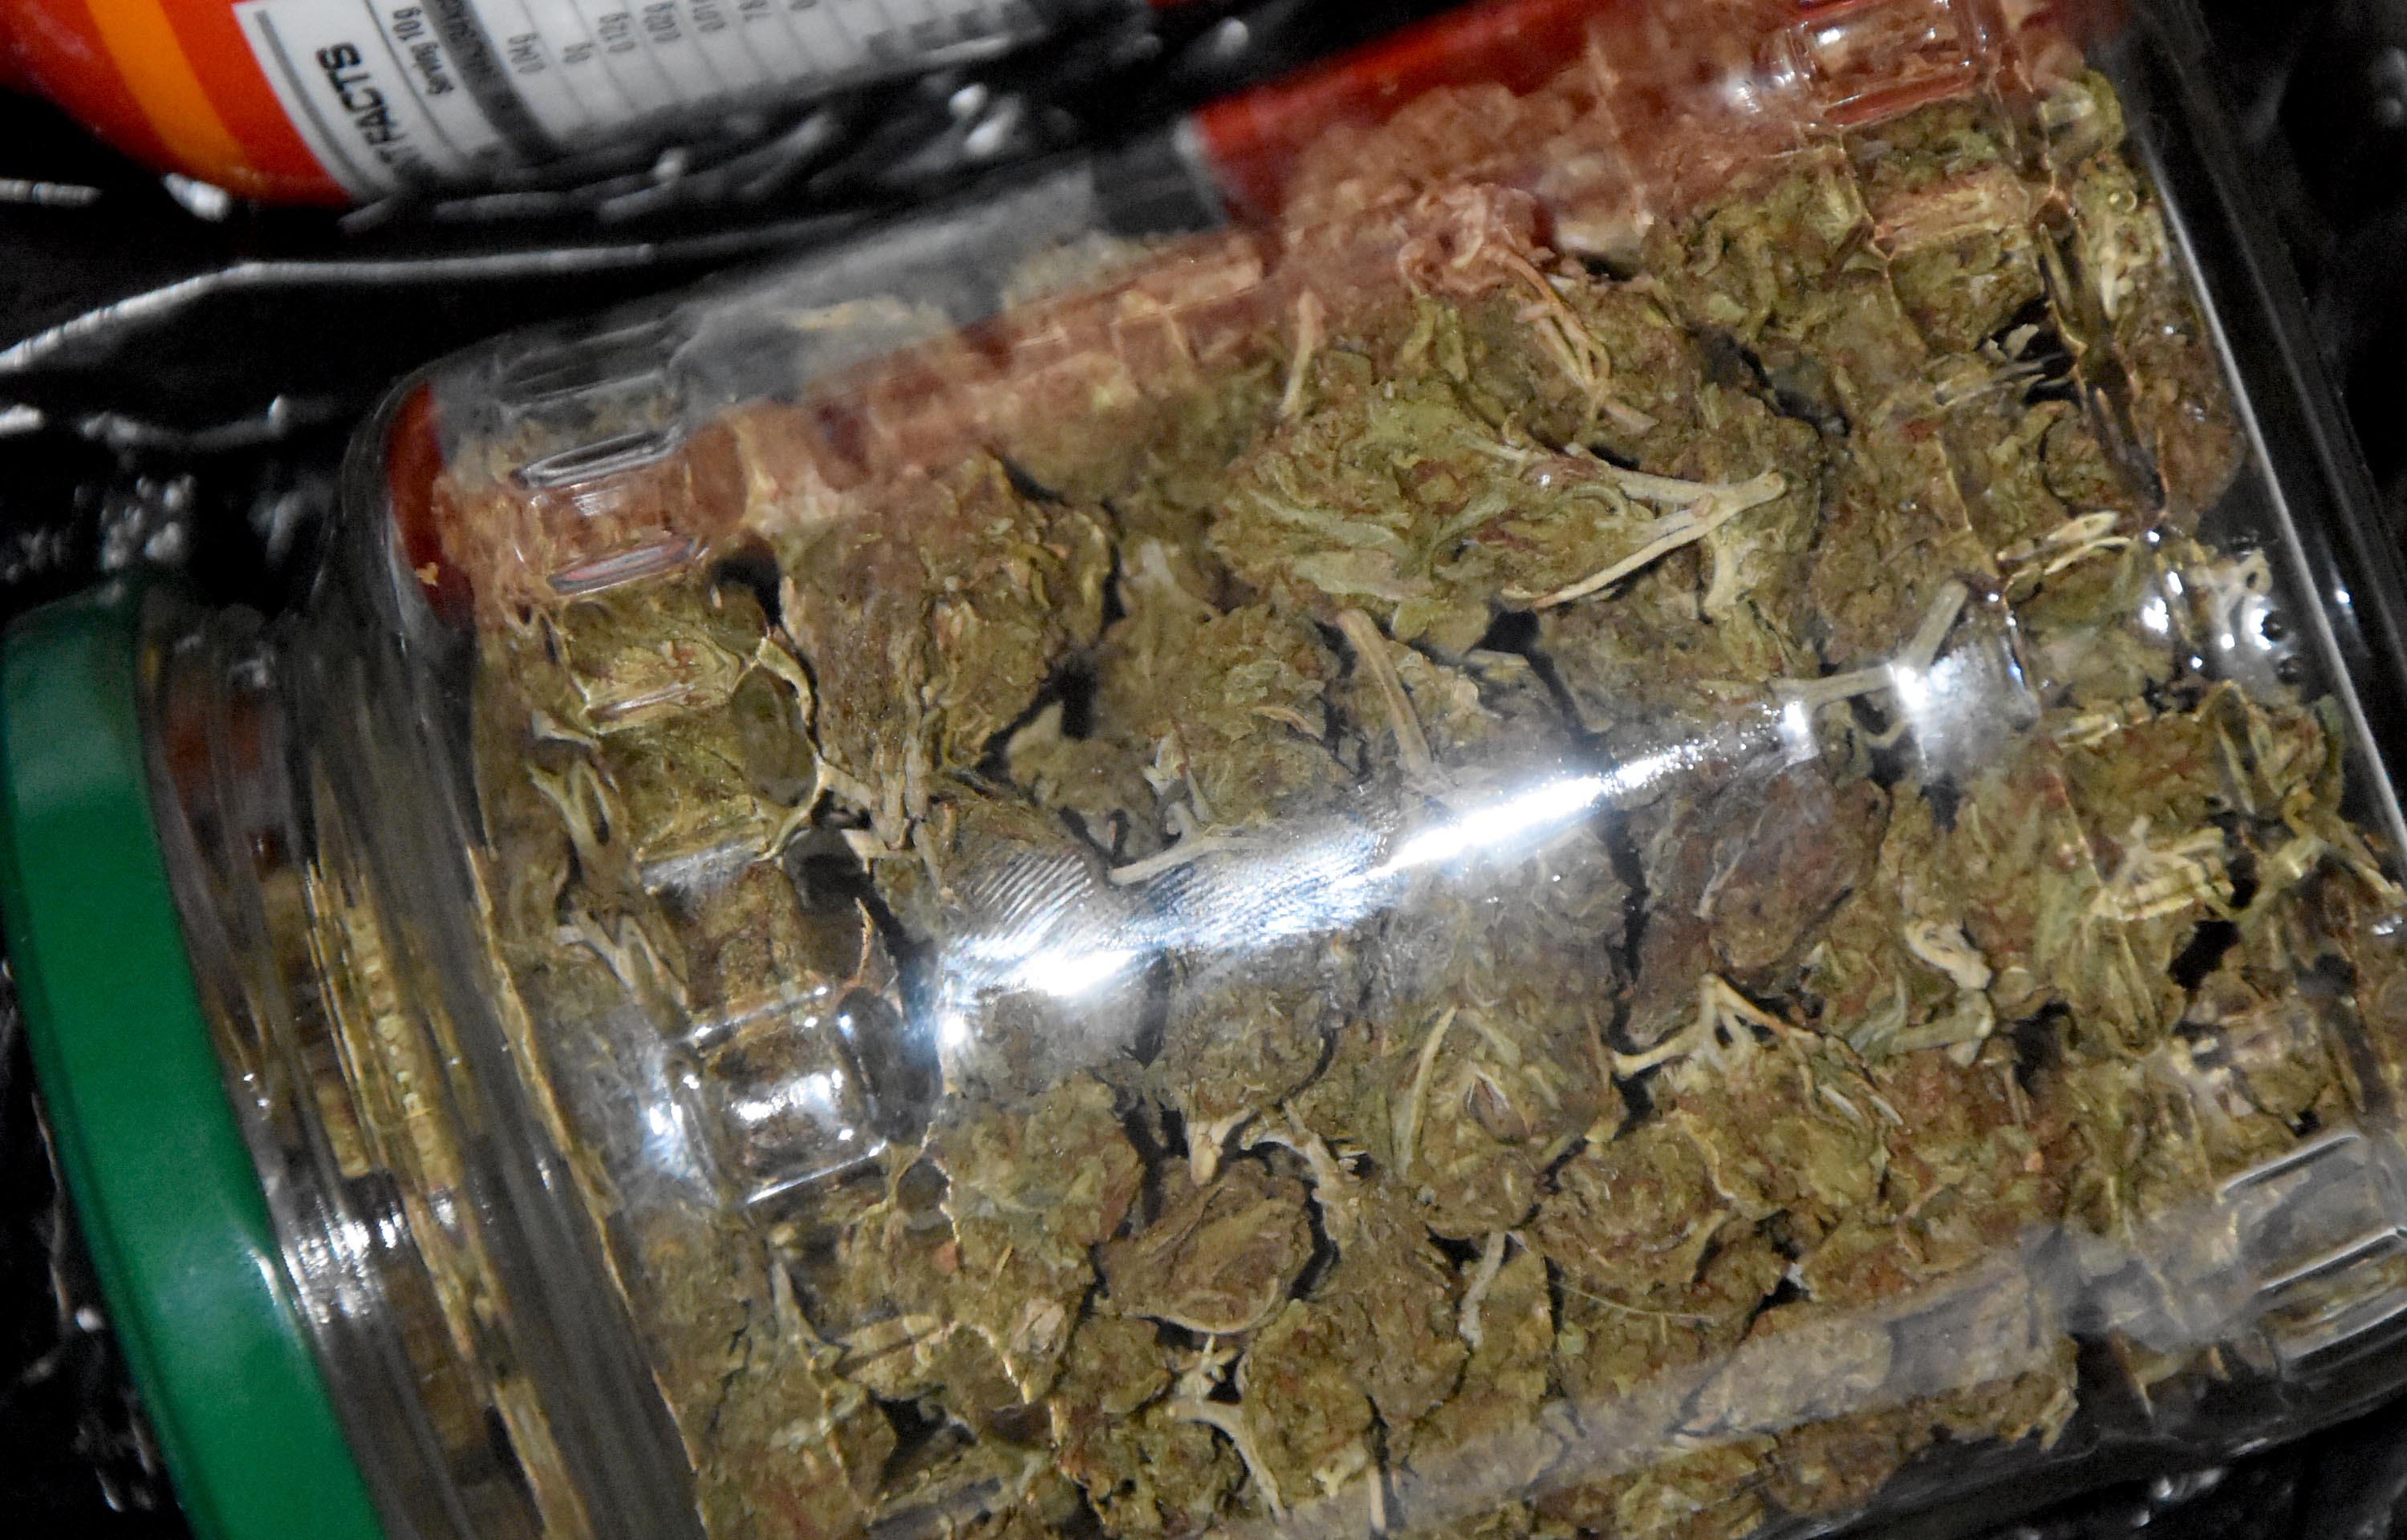 Zaplenjeno oko 3,5 kilograma marihuane, uhapšen osumnjičeni